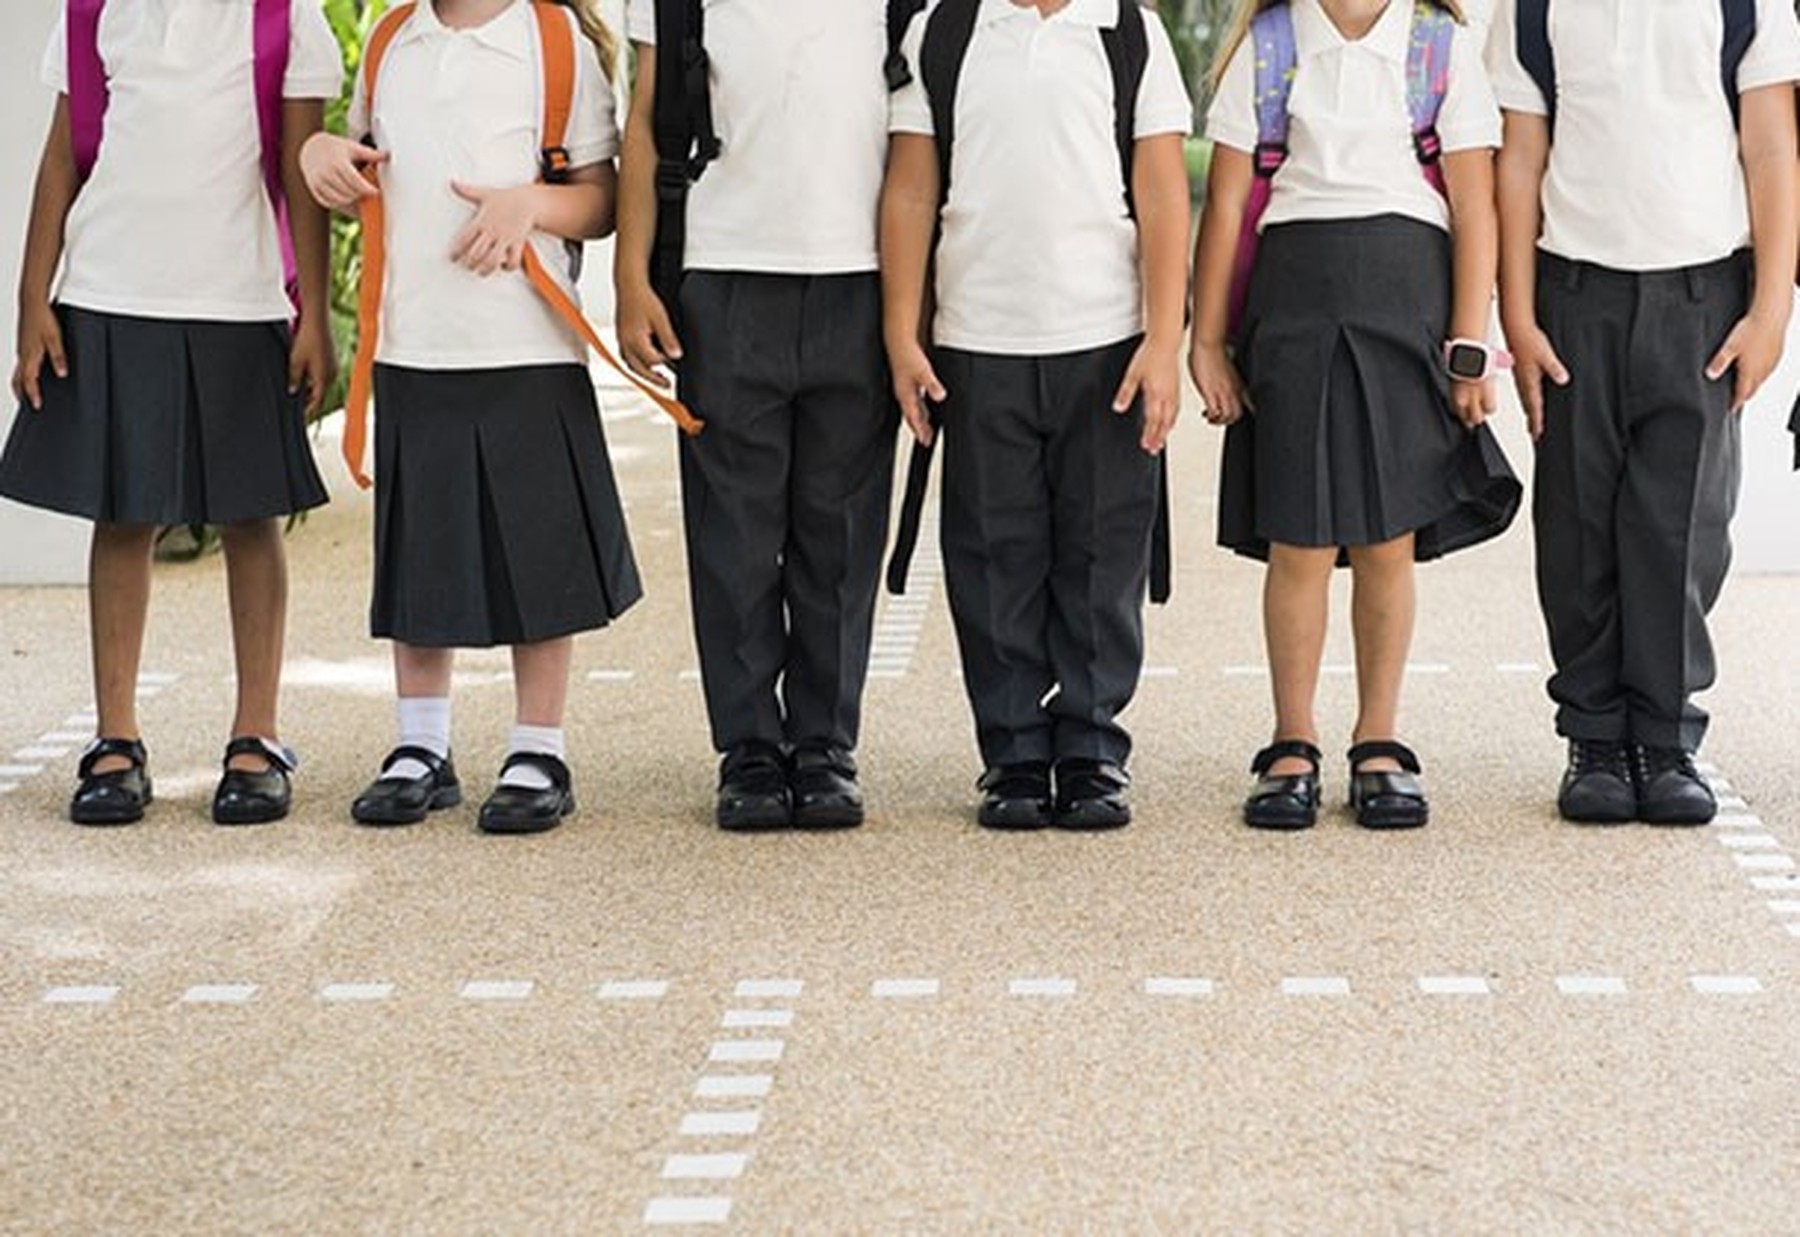 Niños y niñas en el patio de un colegio vistiendo uniforme de falda o pantalón negro y polo blanco